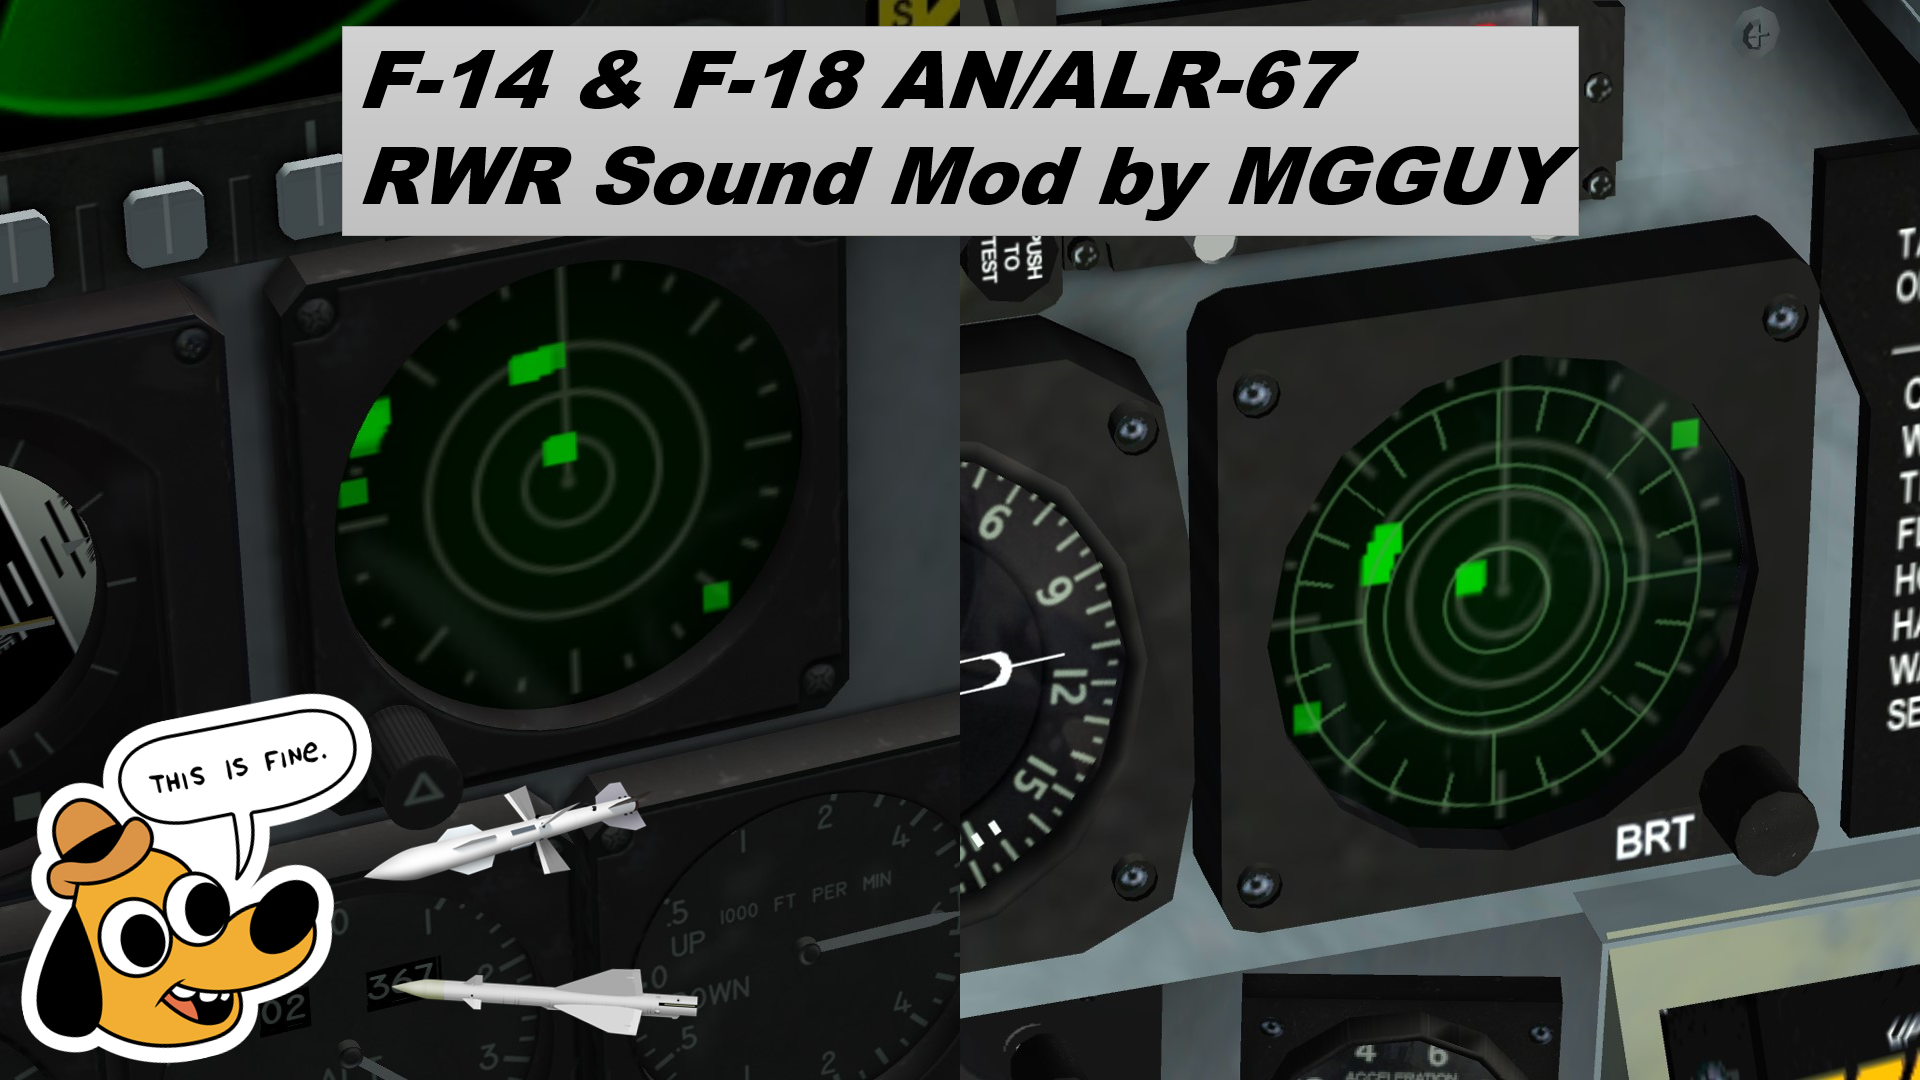 F-14 & F/A-18 AN/ALR-67 RWR Sound Mod